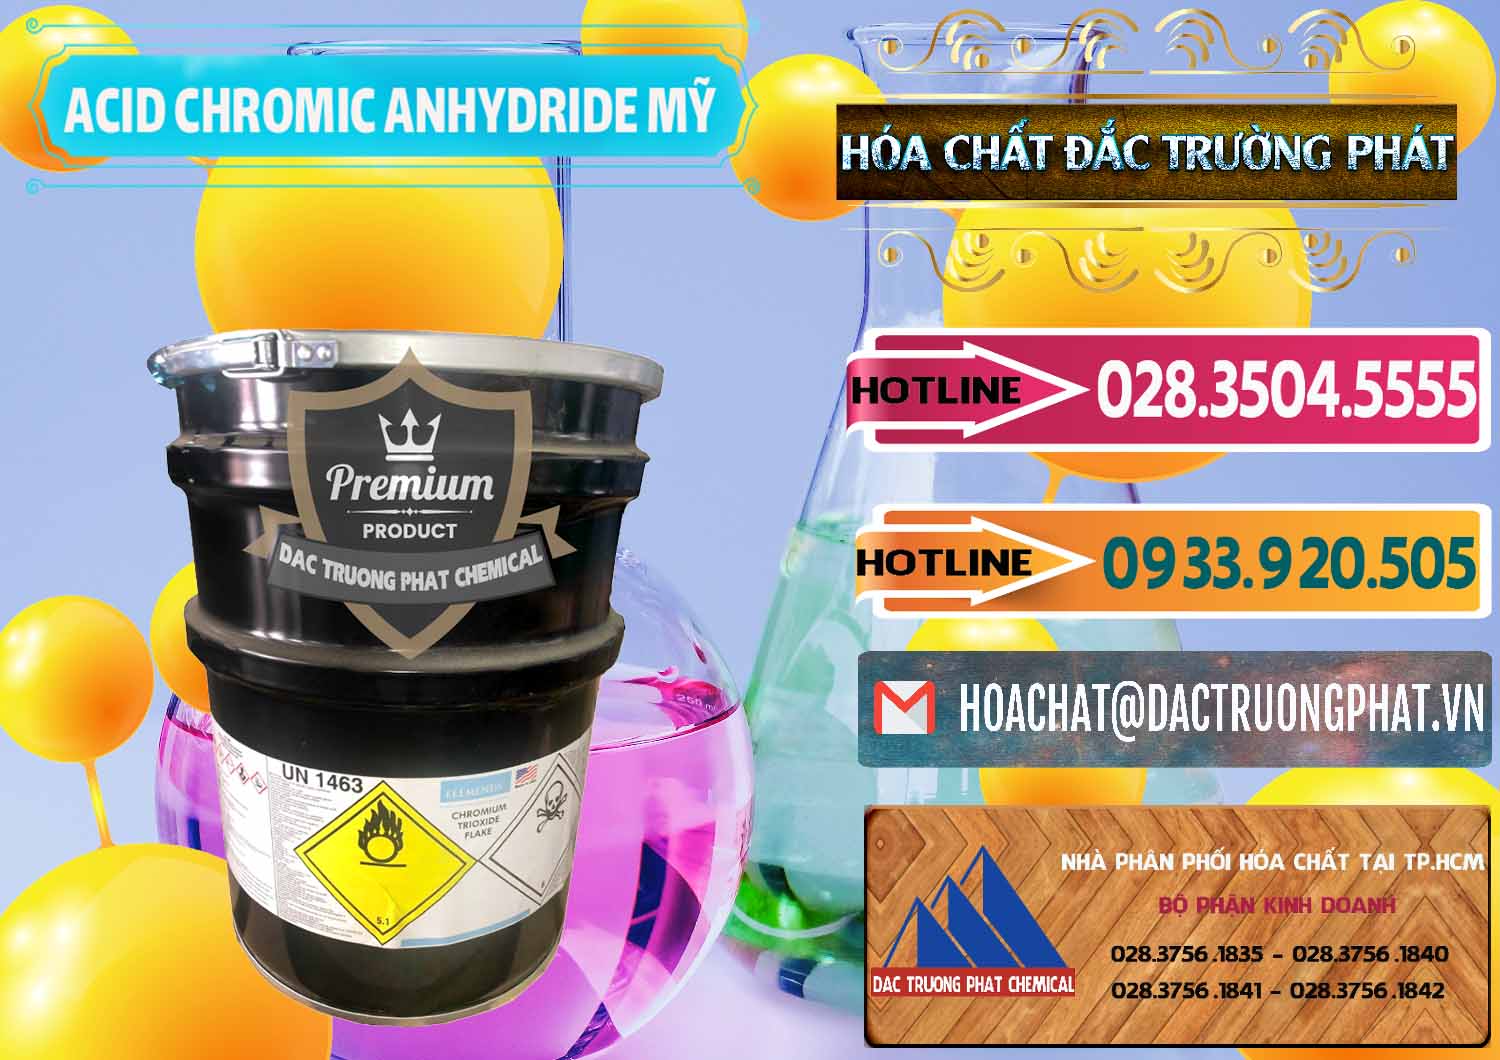 Nhà cung cấp - bán Acid Chromic Anhydride - Cromic CRO3 USA Mỹ - 0364 - Công ty cung ứng và phân phối hóa chất tại TP.HCM - dactruongphat.vn